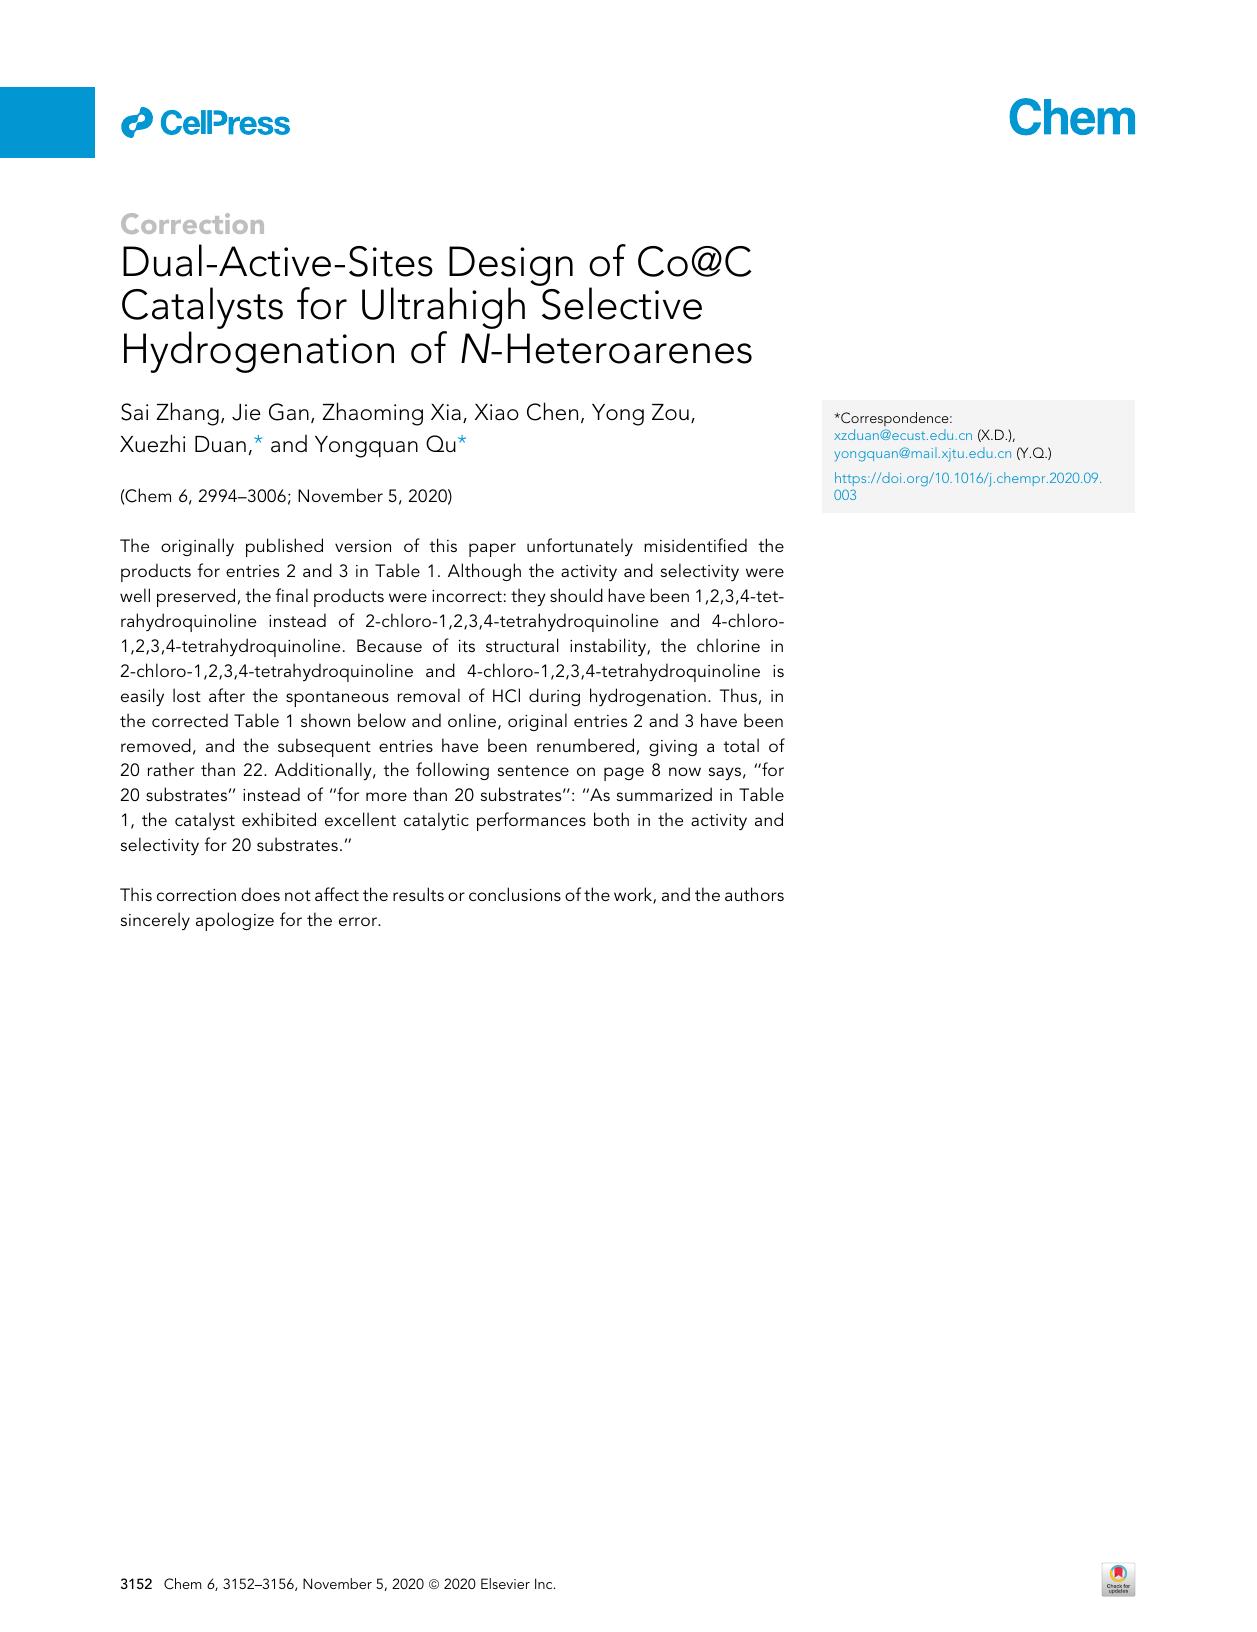 Dual-Active-Sites Design of Co@C Catalysts for Ultrahigh Selective Hydrogenation of N-Heteroarenes by Sai Zhang & Jie Gan & Zhaoming Xia & Xiao Chen & Yong Zou & Xuezhi Duan & Yongquan Qu